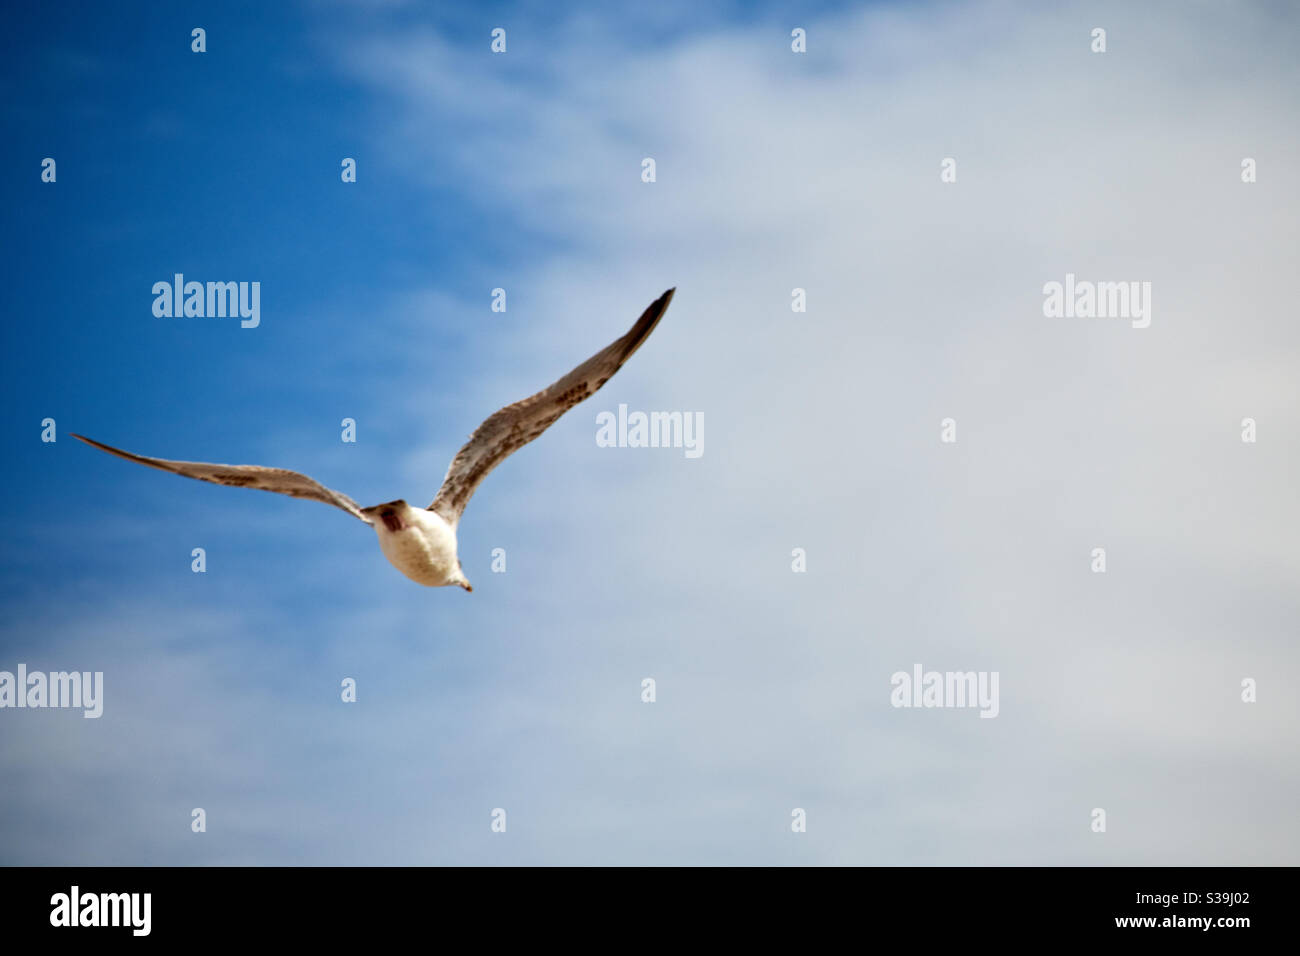 Una gaviota vuela en el aire frente al cielo azul ligeramente nublado del verano sobre el Mar Báltico. Los movimientos de vuelo se pueden ver muy bien. Foto de stock